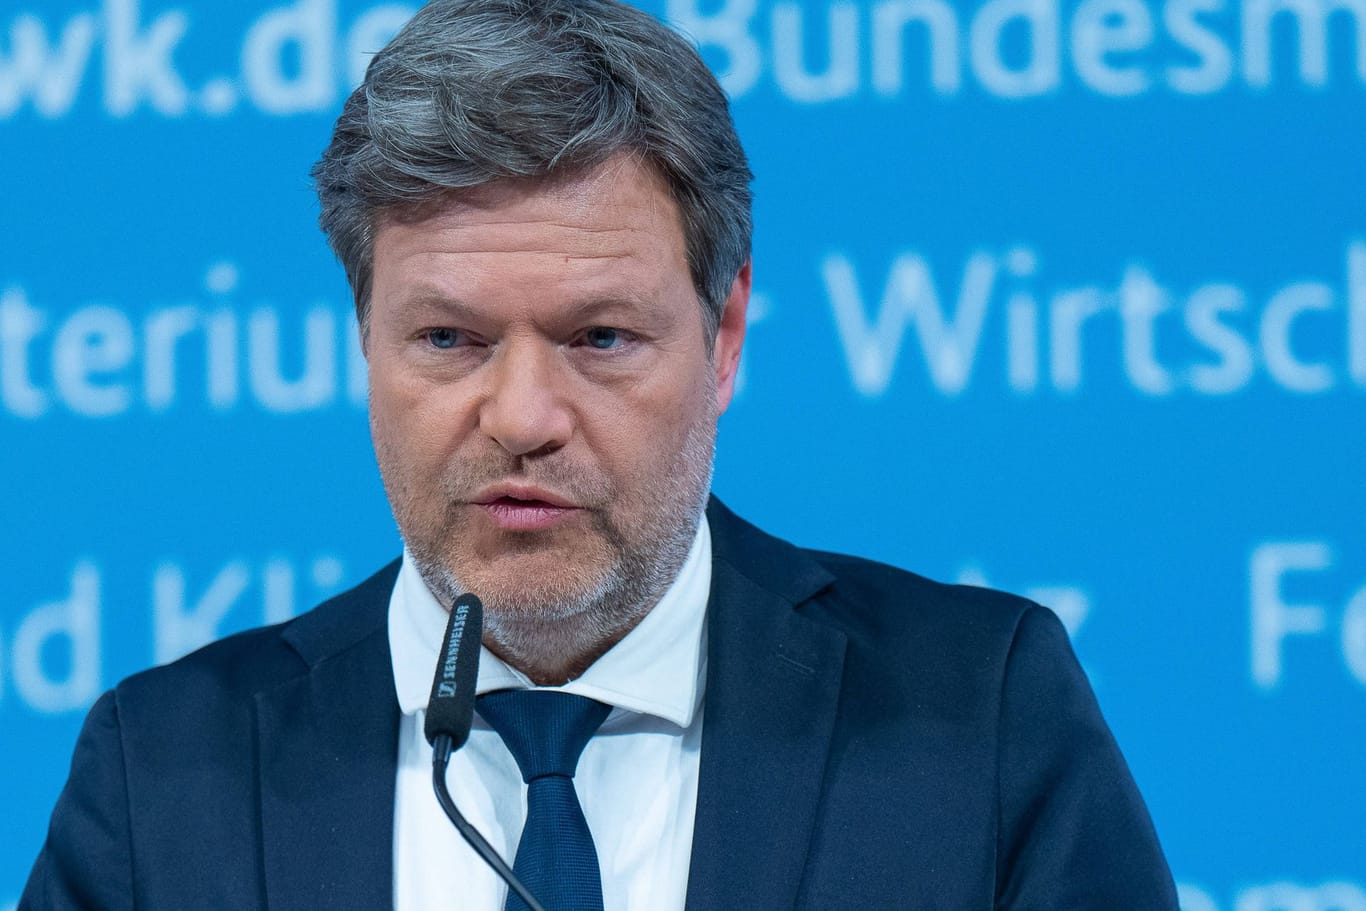 Robert Habeck: Der Grünen-Politiker sieht für seine Partei trotz Kritik Erfolge.